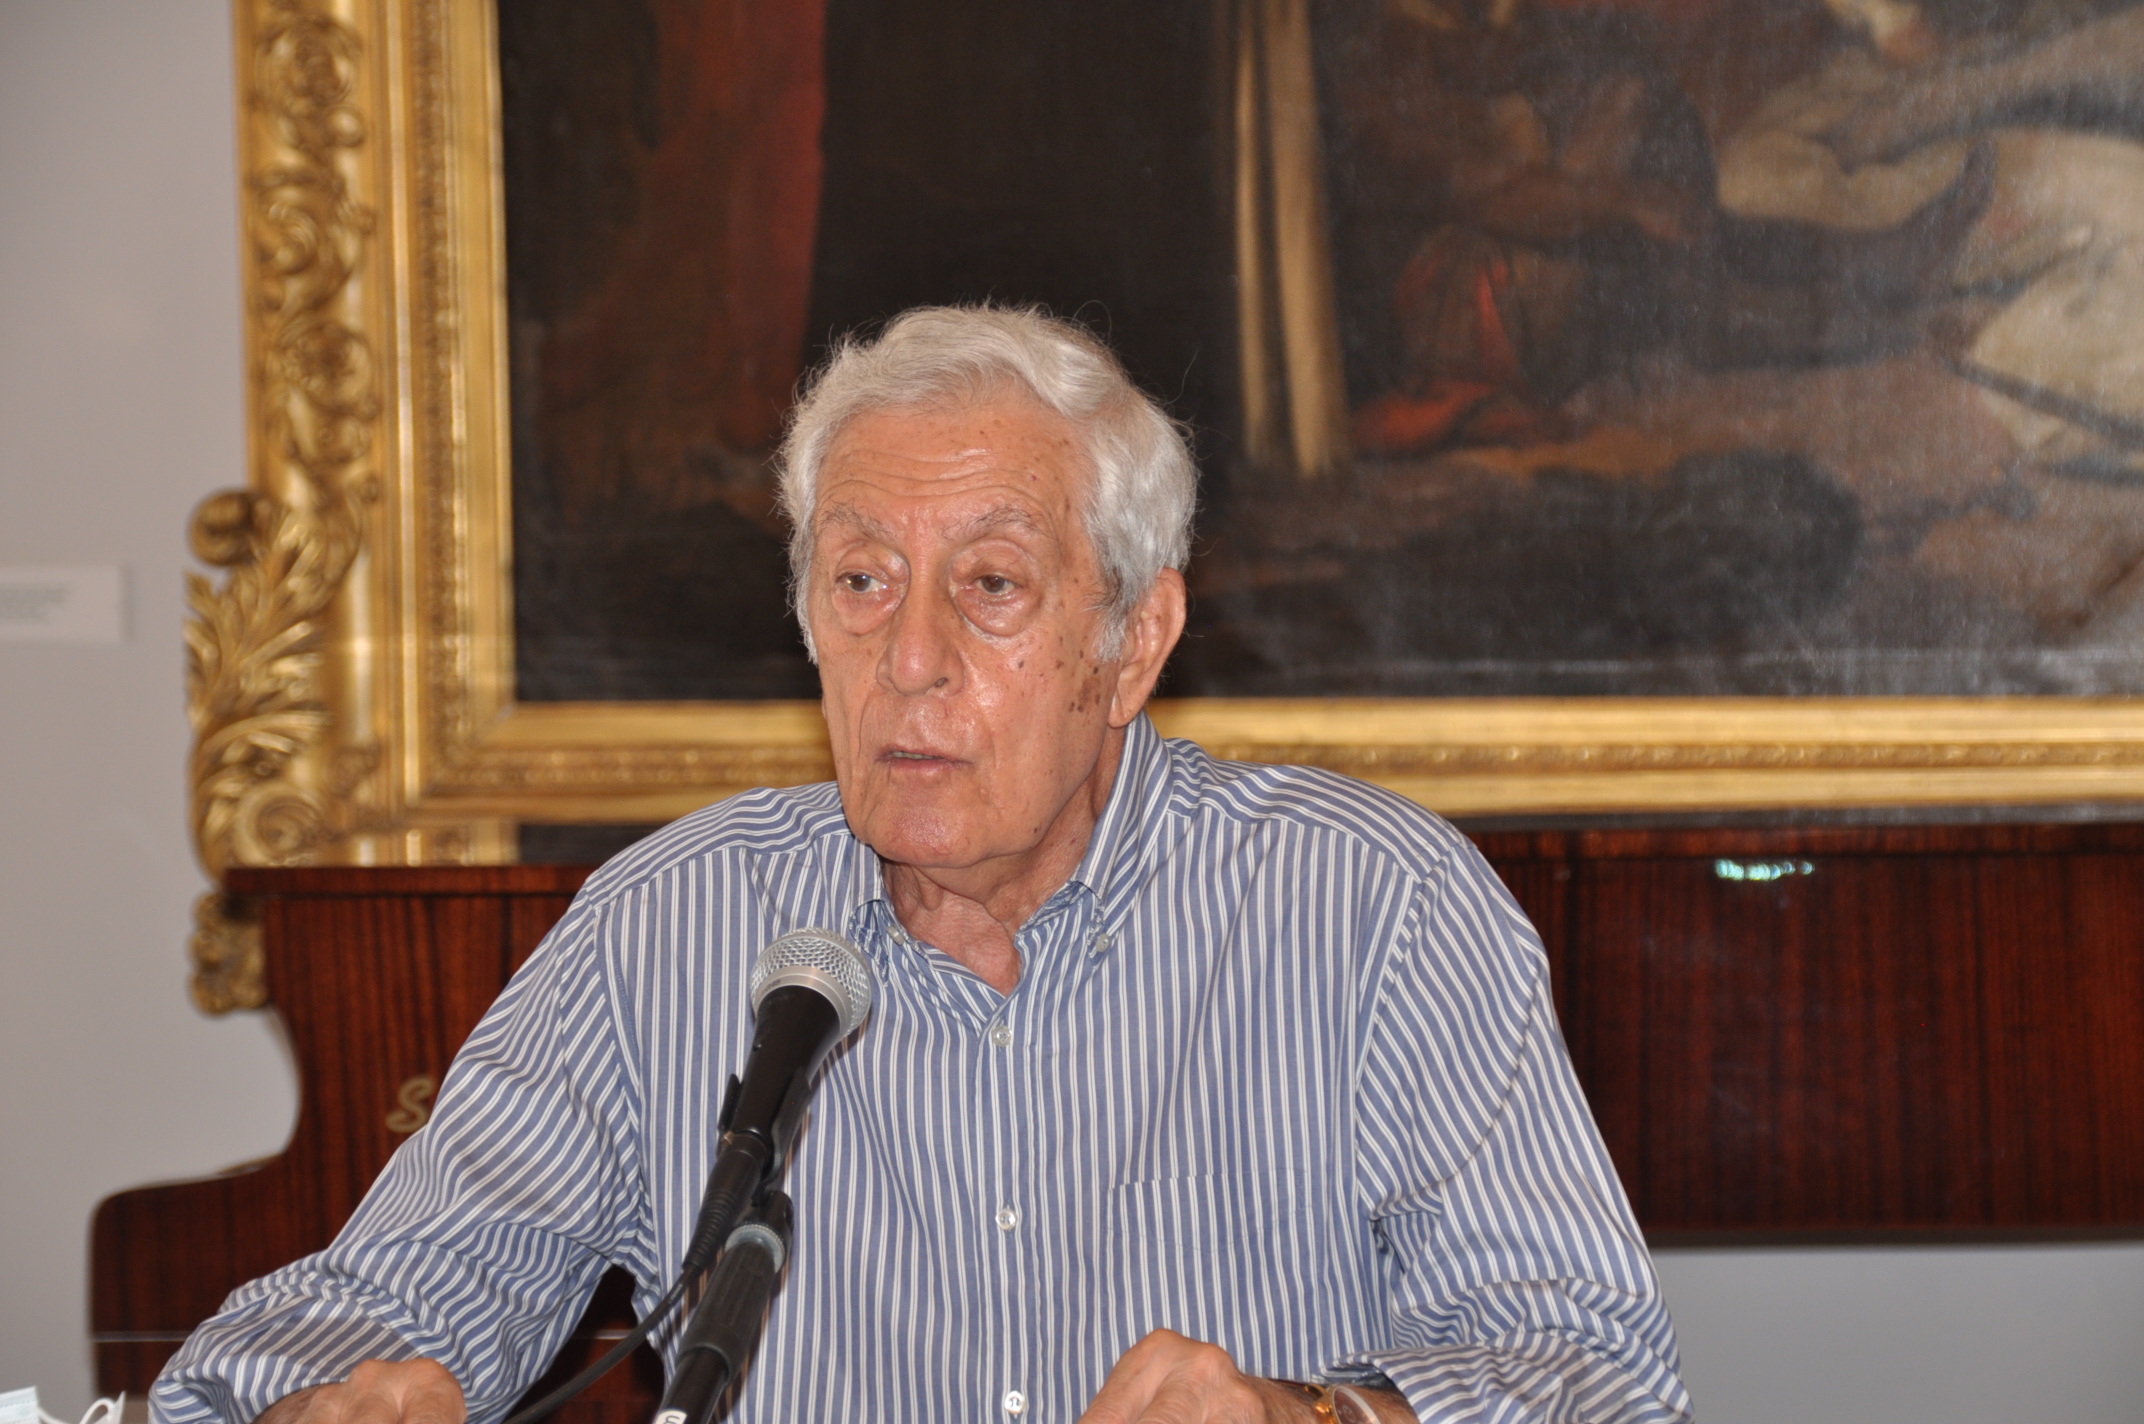 Benevento| Il Prof. Elio Galasso nominato Direttore del Museo del Sannio